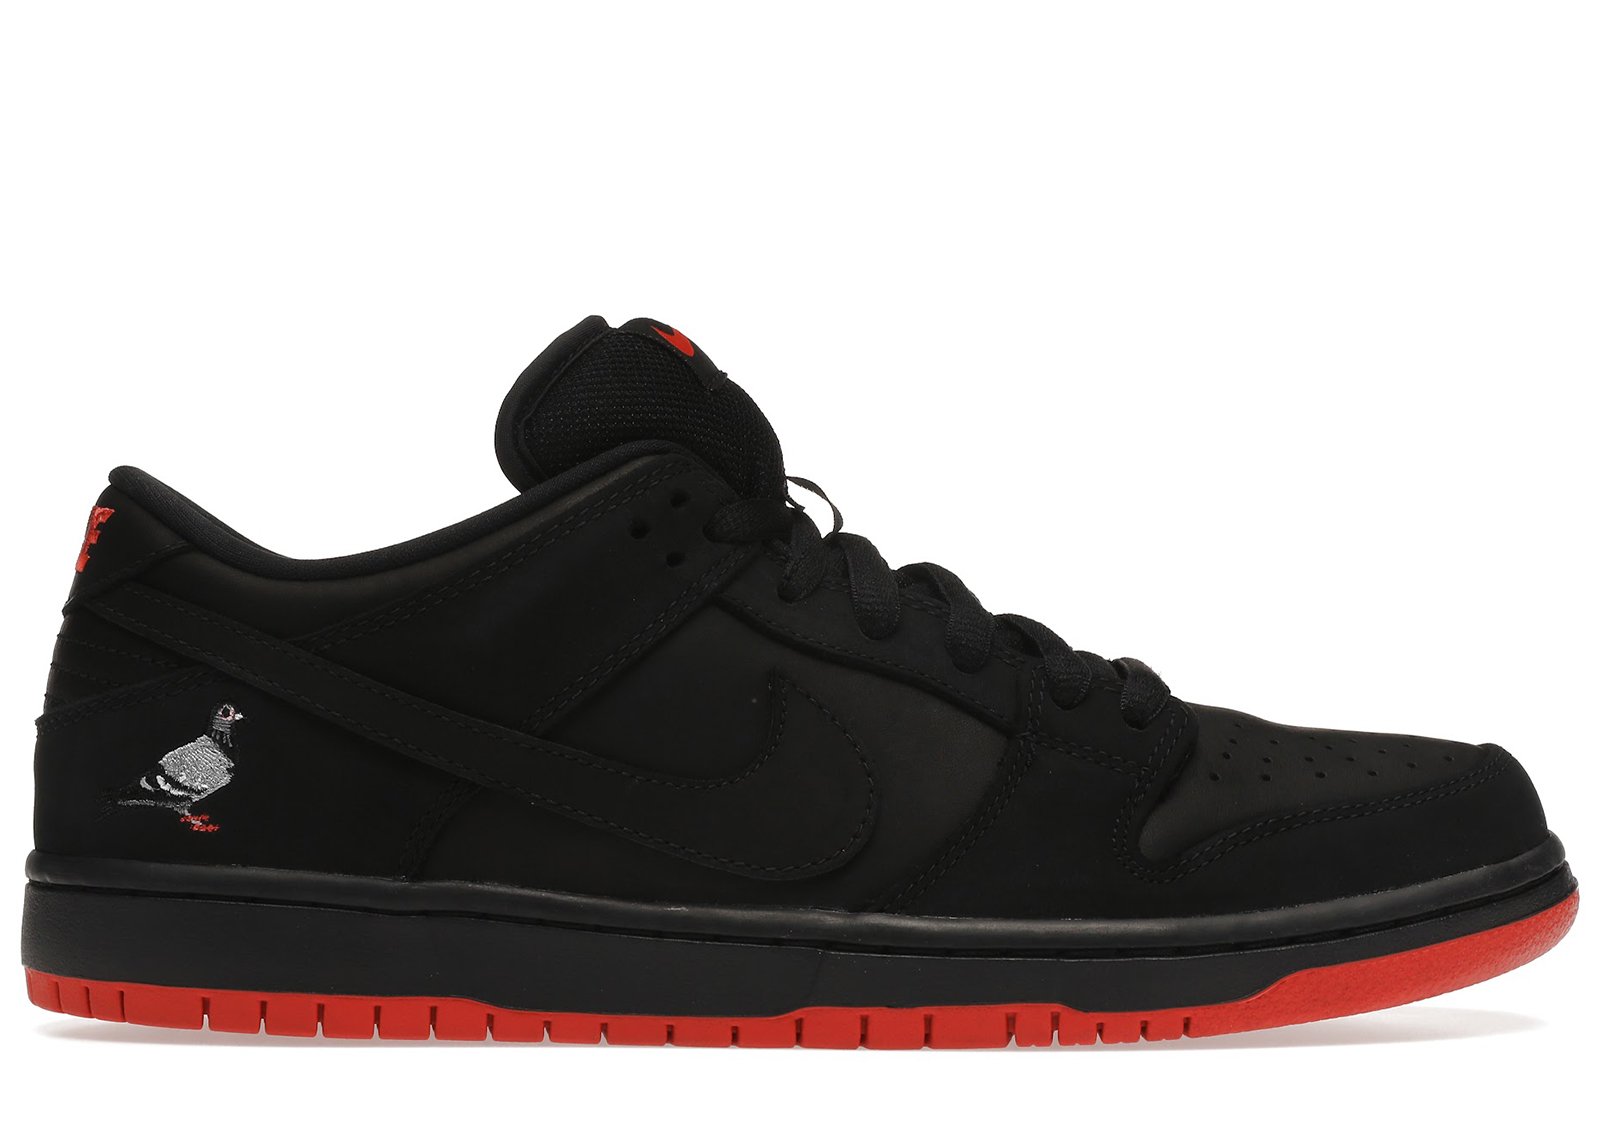 Nike SB Dunk Low Black Pigeon sneakers